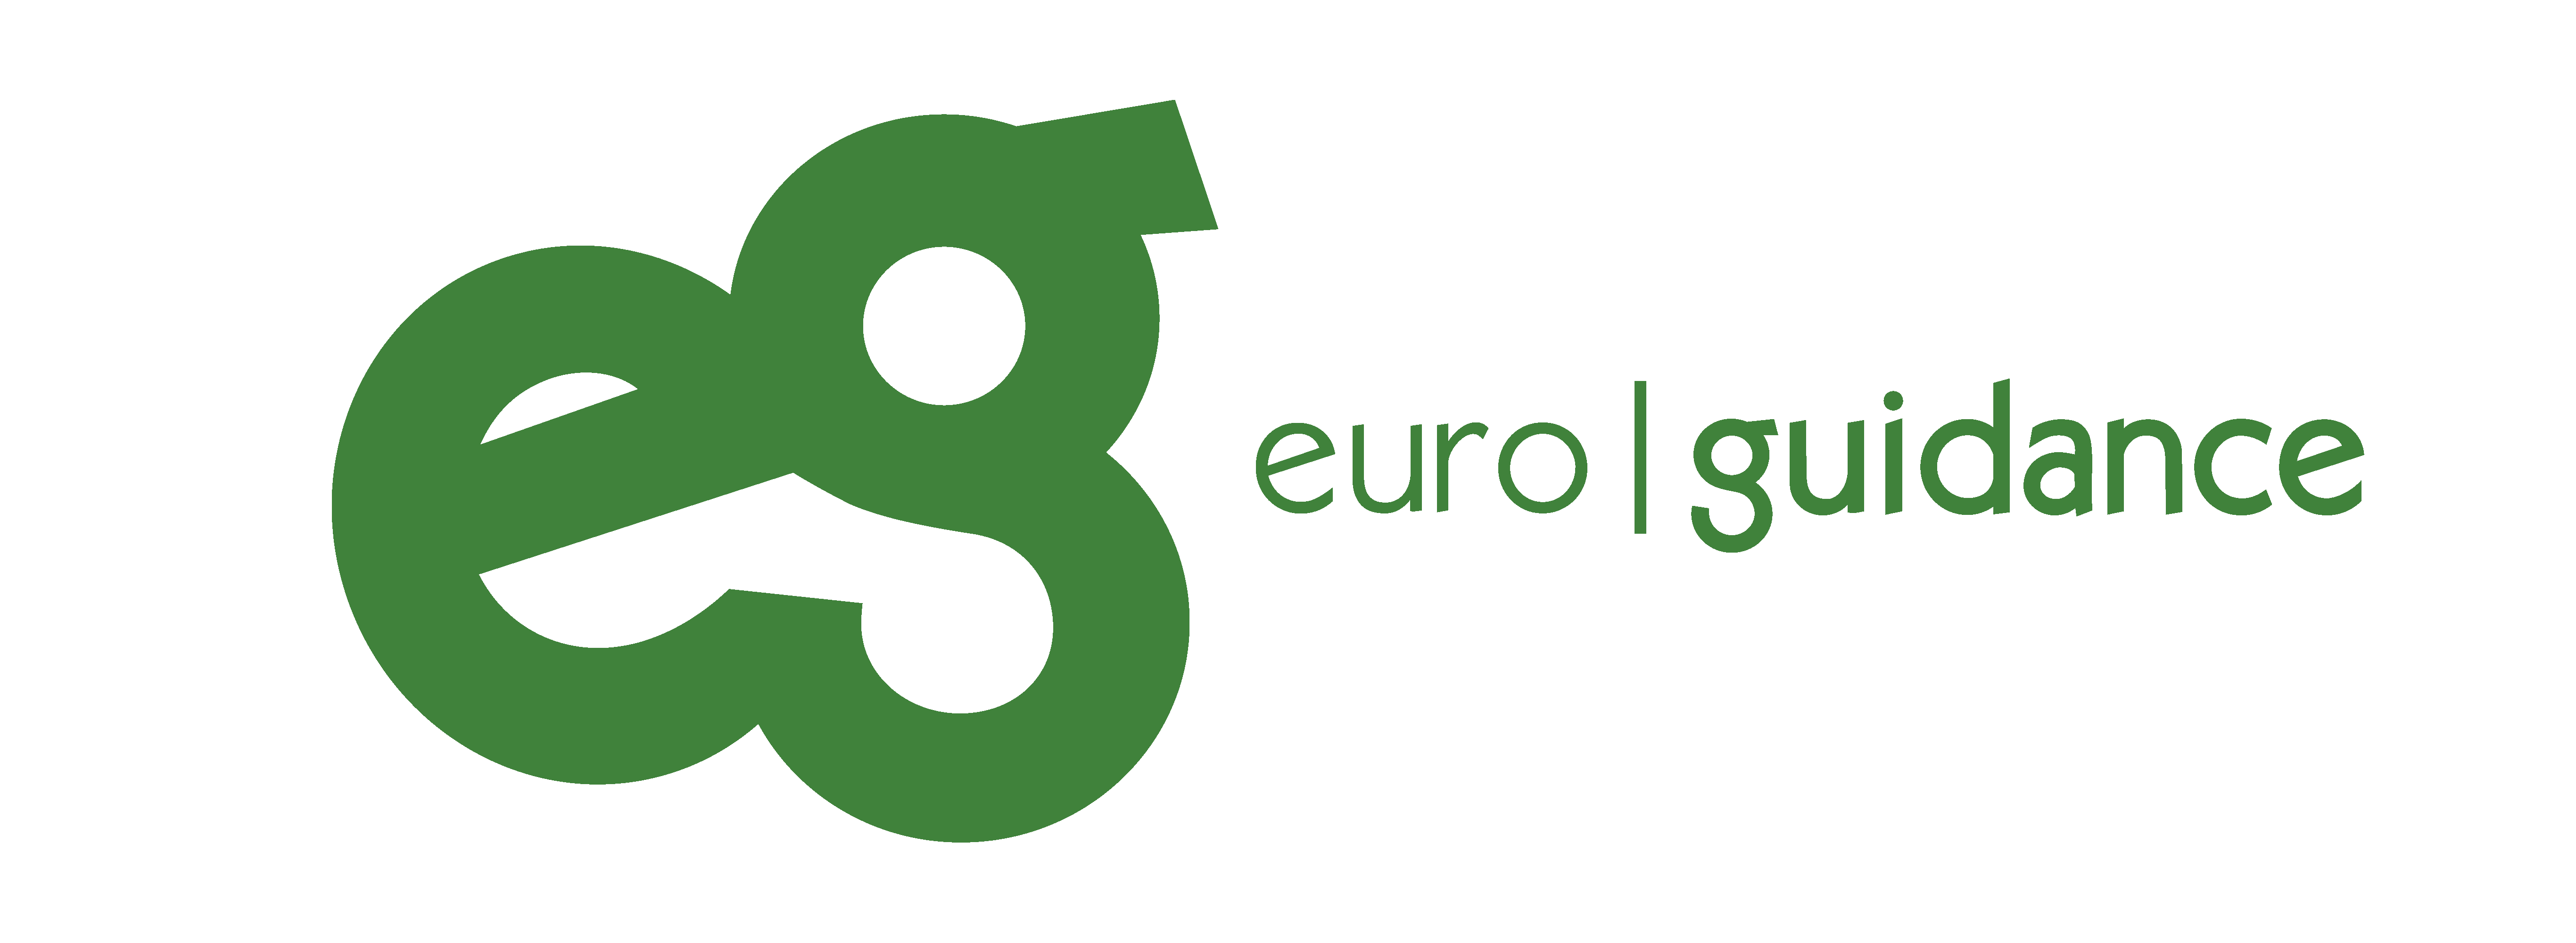 euroguidance (verweist auf: Registration)